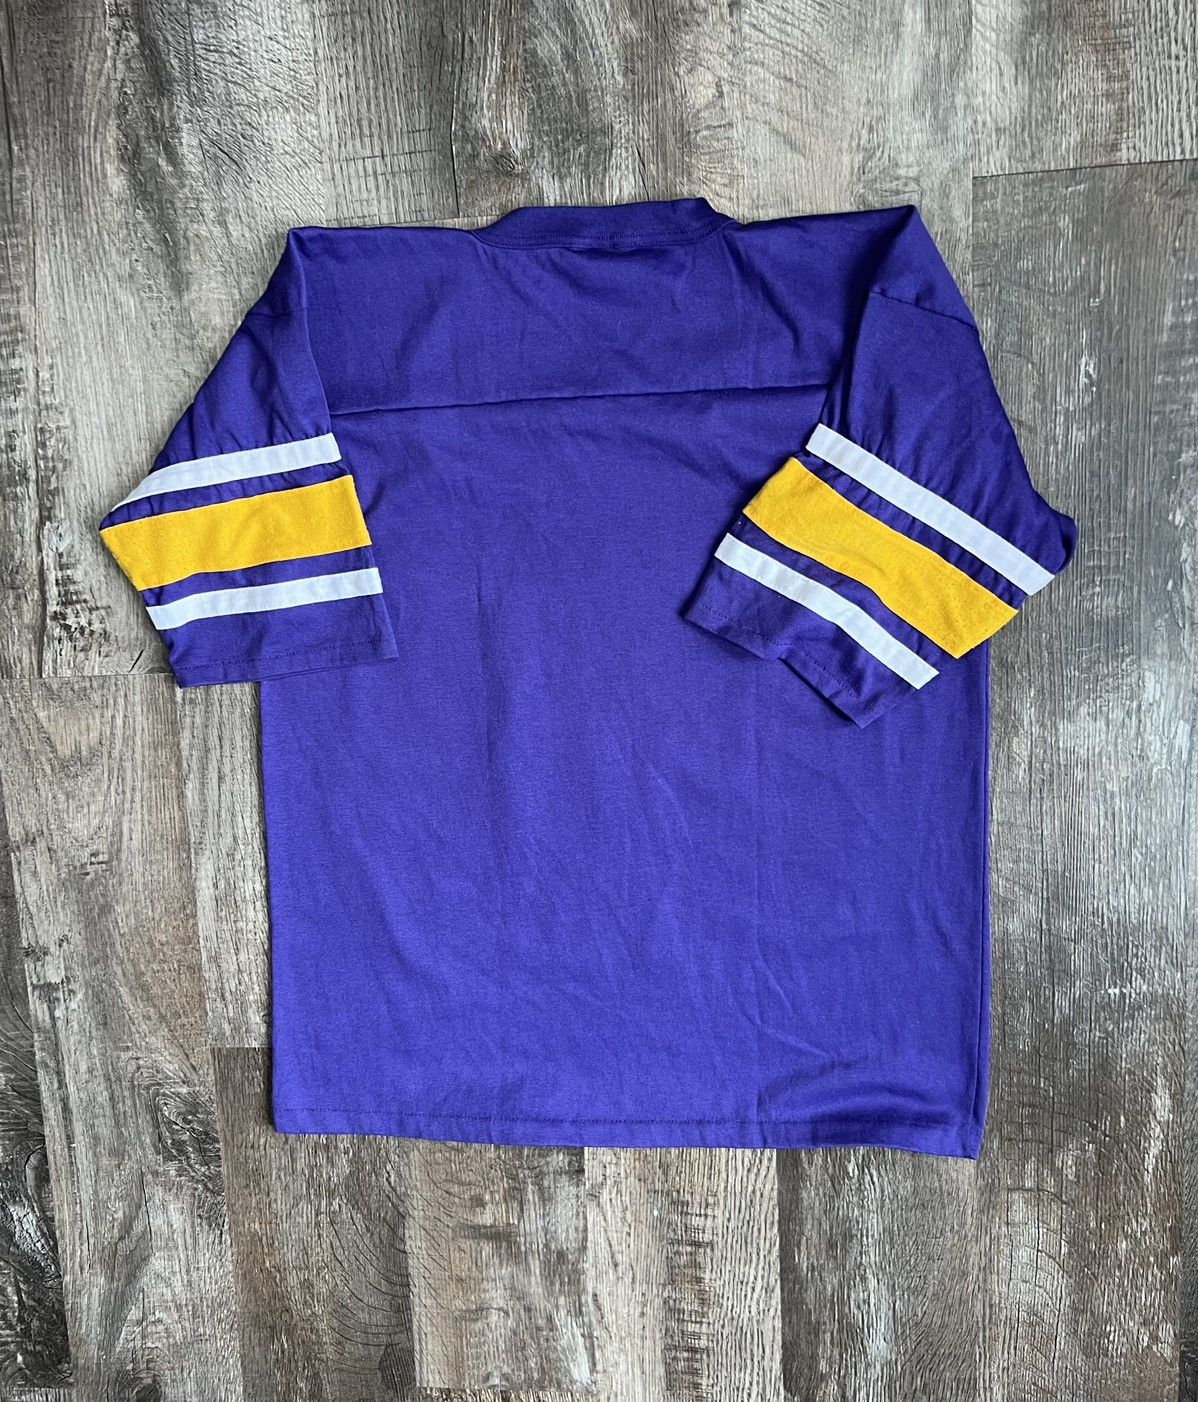 Vintage Vintage Minnesota Vikings Shirt Size US L / EU 52-54 / 3 - 8 Thumbnail